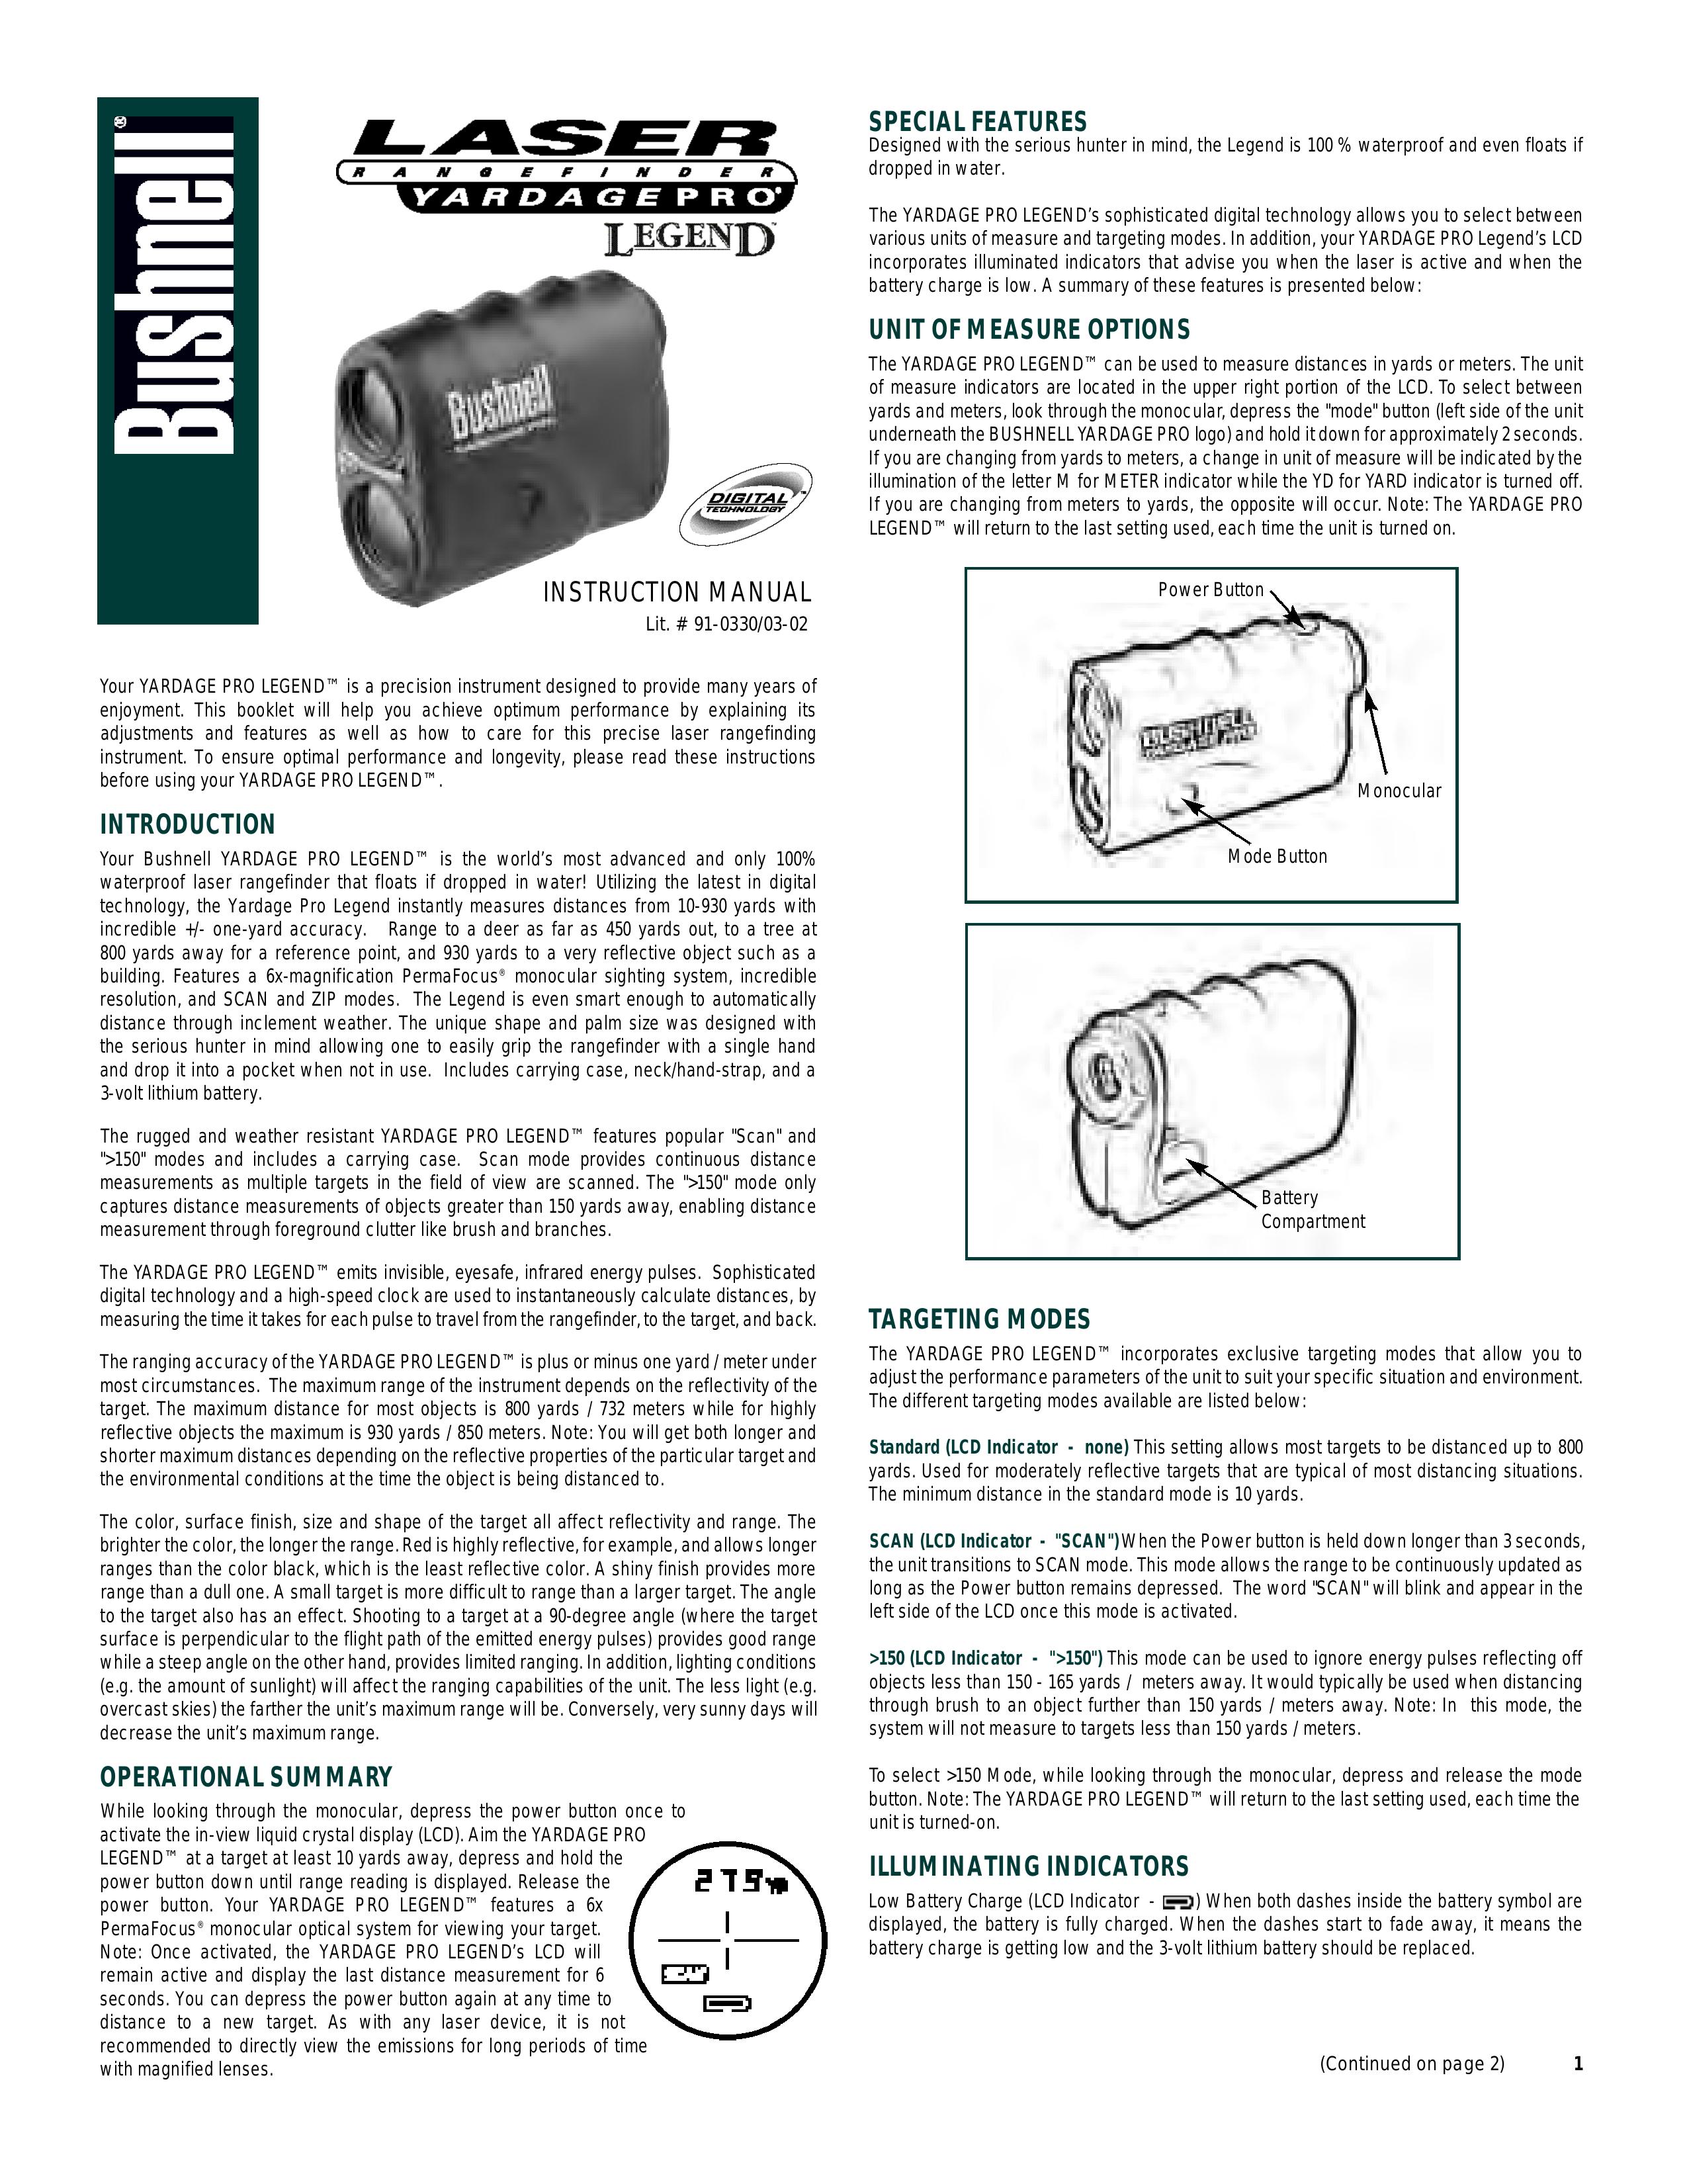 Bushnell 91-0330/03-02 Digital Camera User Manual